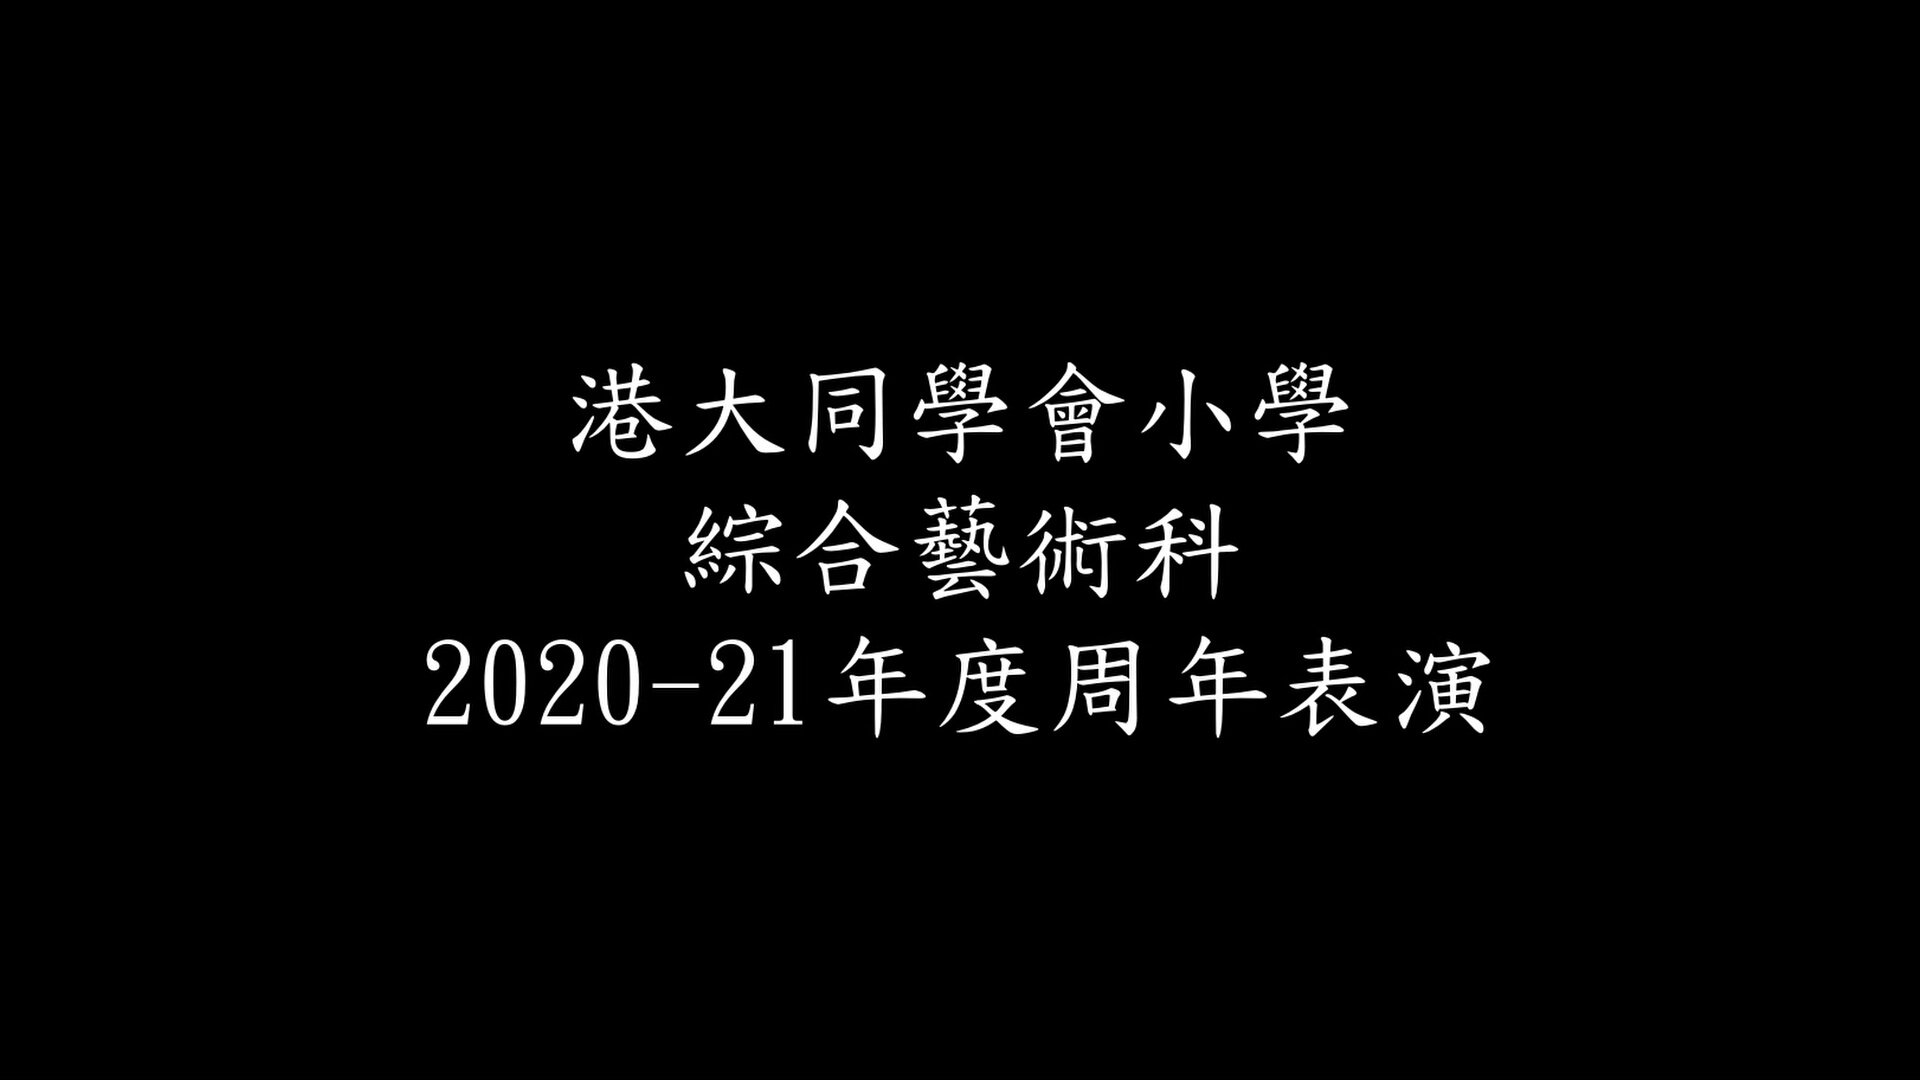 2021 綜合藝術科周年表演《飛越無限Zoom》預告片